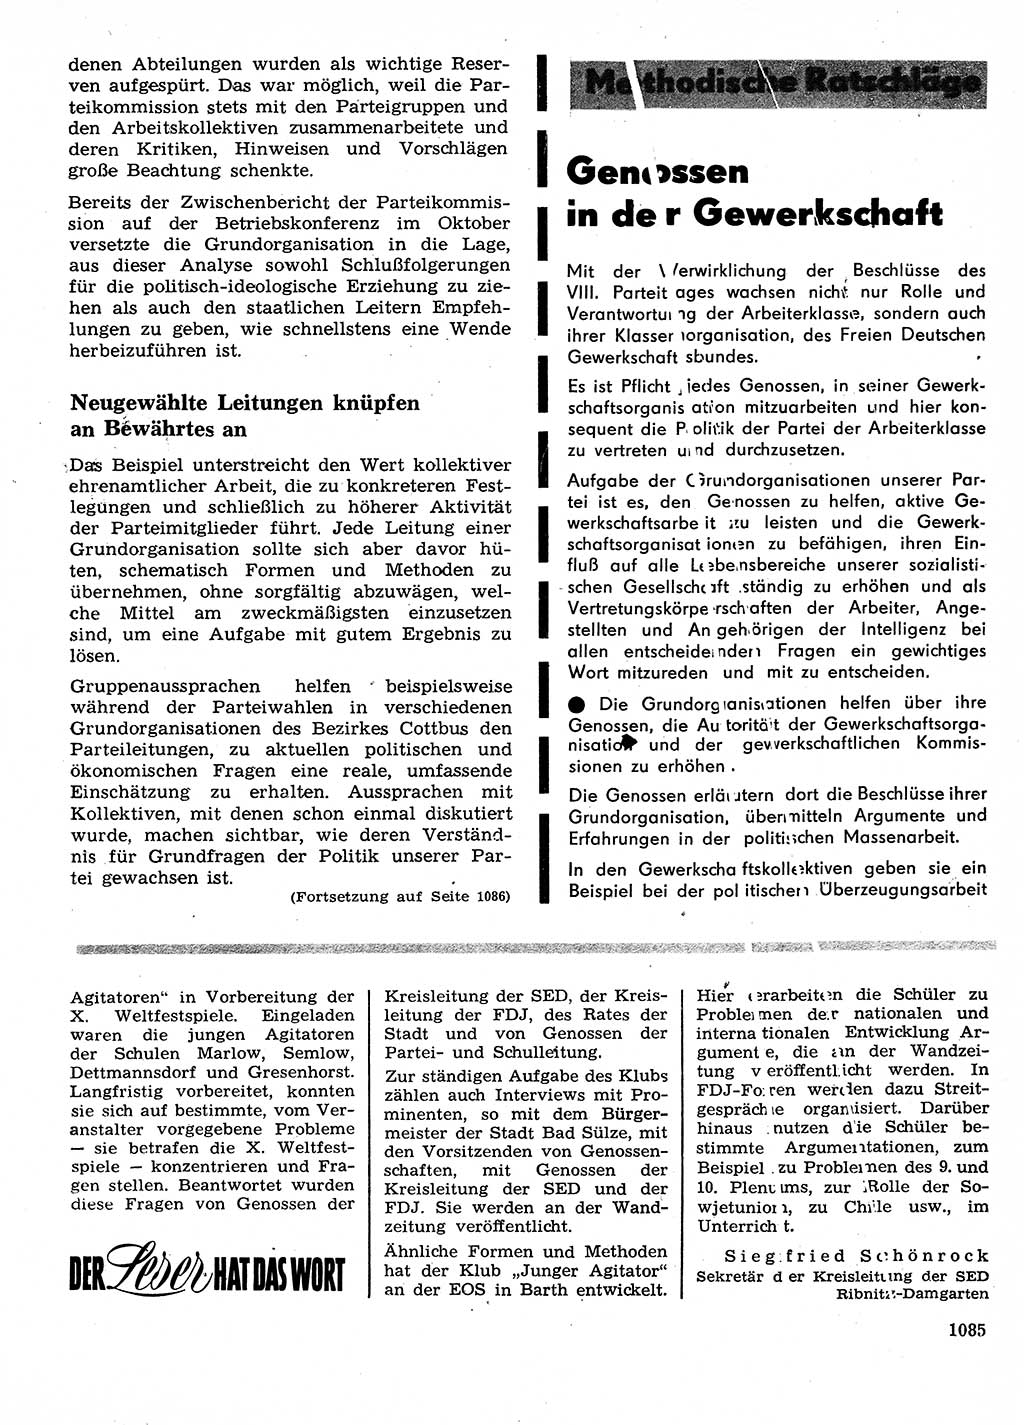 Neuer Weg (NW), Organ des Zentralkomitees (ZK) der SED (Sozialistische Einheitspartei Deutschlands) für Fragen des Parteilebens, 28. Jahrgang [Deutsche Demokratische Republik (DDR)] 1973, Seite 1085 (NW ZK SED DDR 1973, S. 1085)